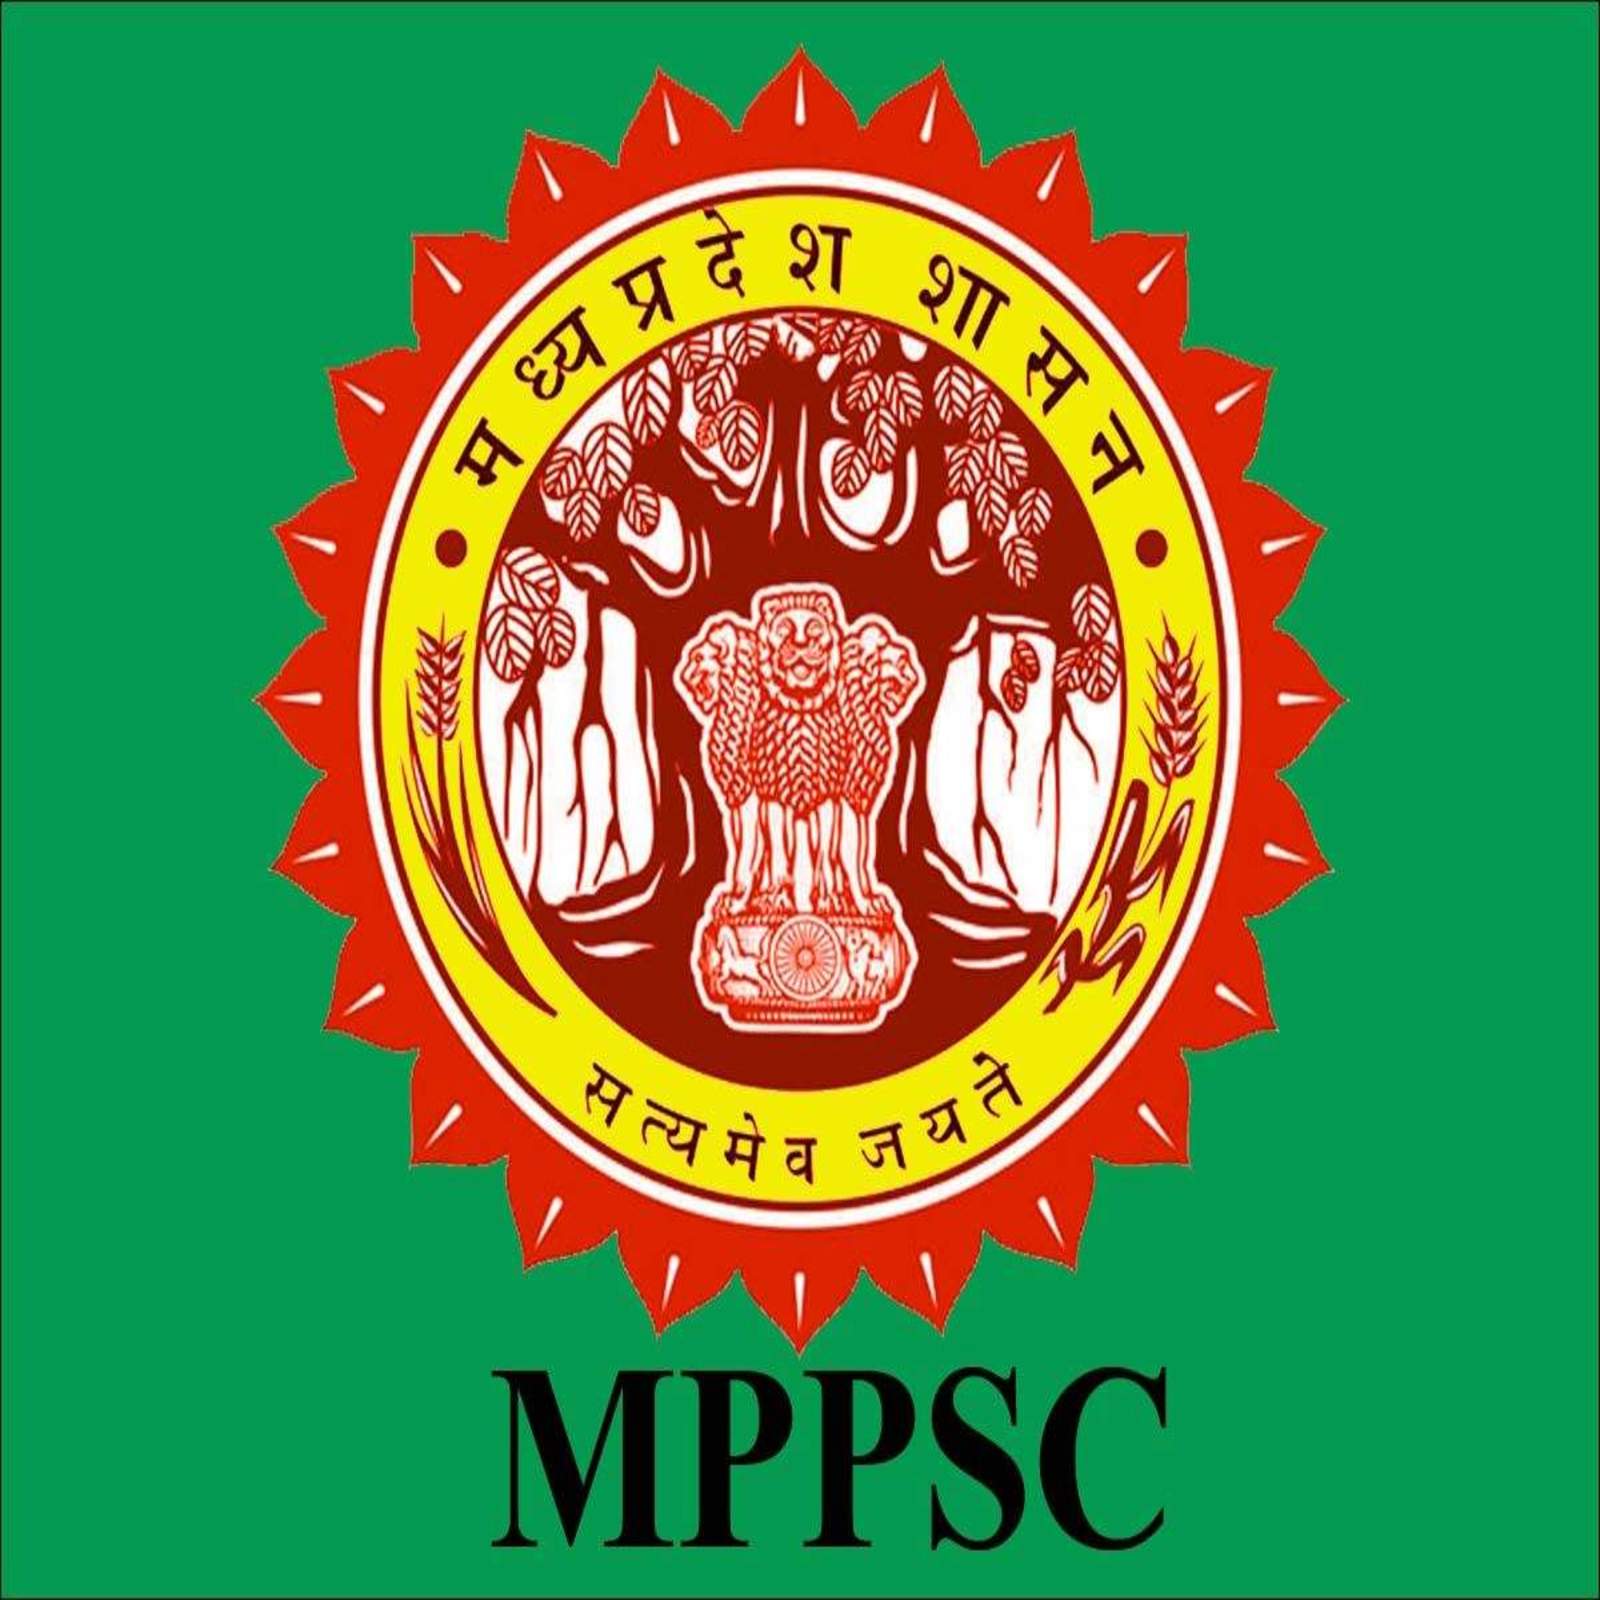 Mppsc : राज्य वन सेवा परीक्षा-राज्य सेवा (प्रारंभिक) परीक्षा 2021 के लिए नोटिफिकेशन जारी, 10 जनवरी से शुरू होंगे आवेदन